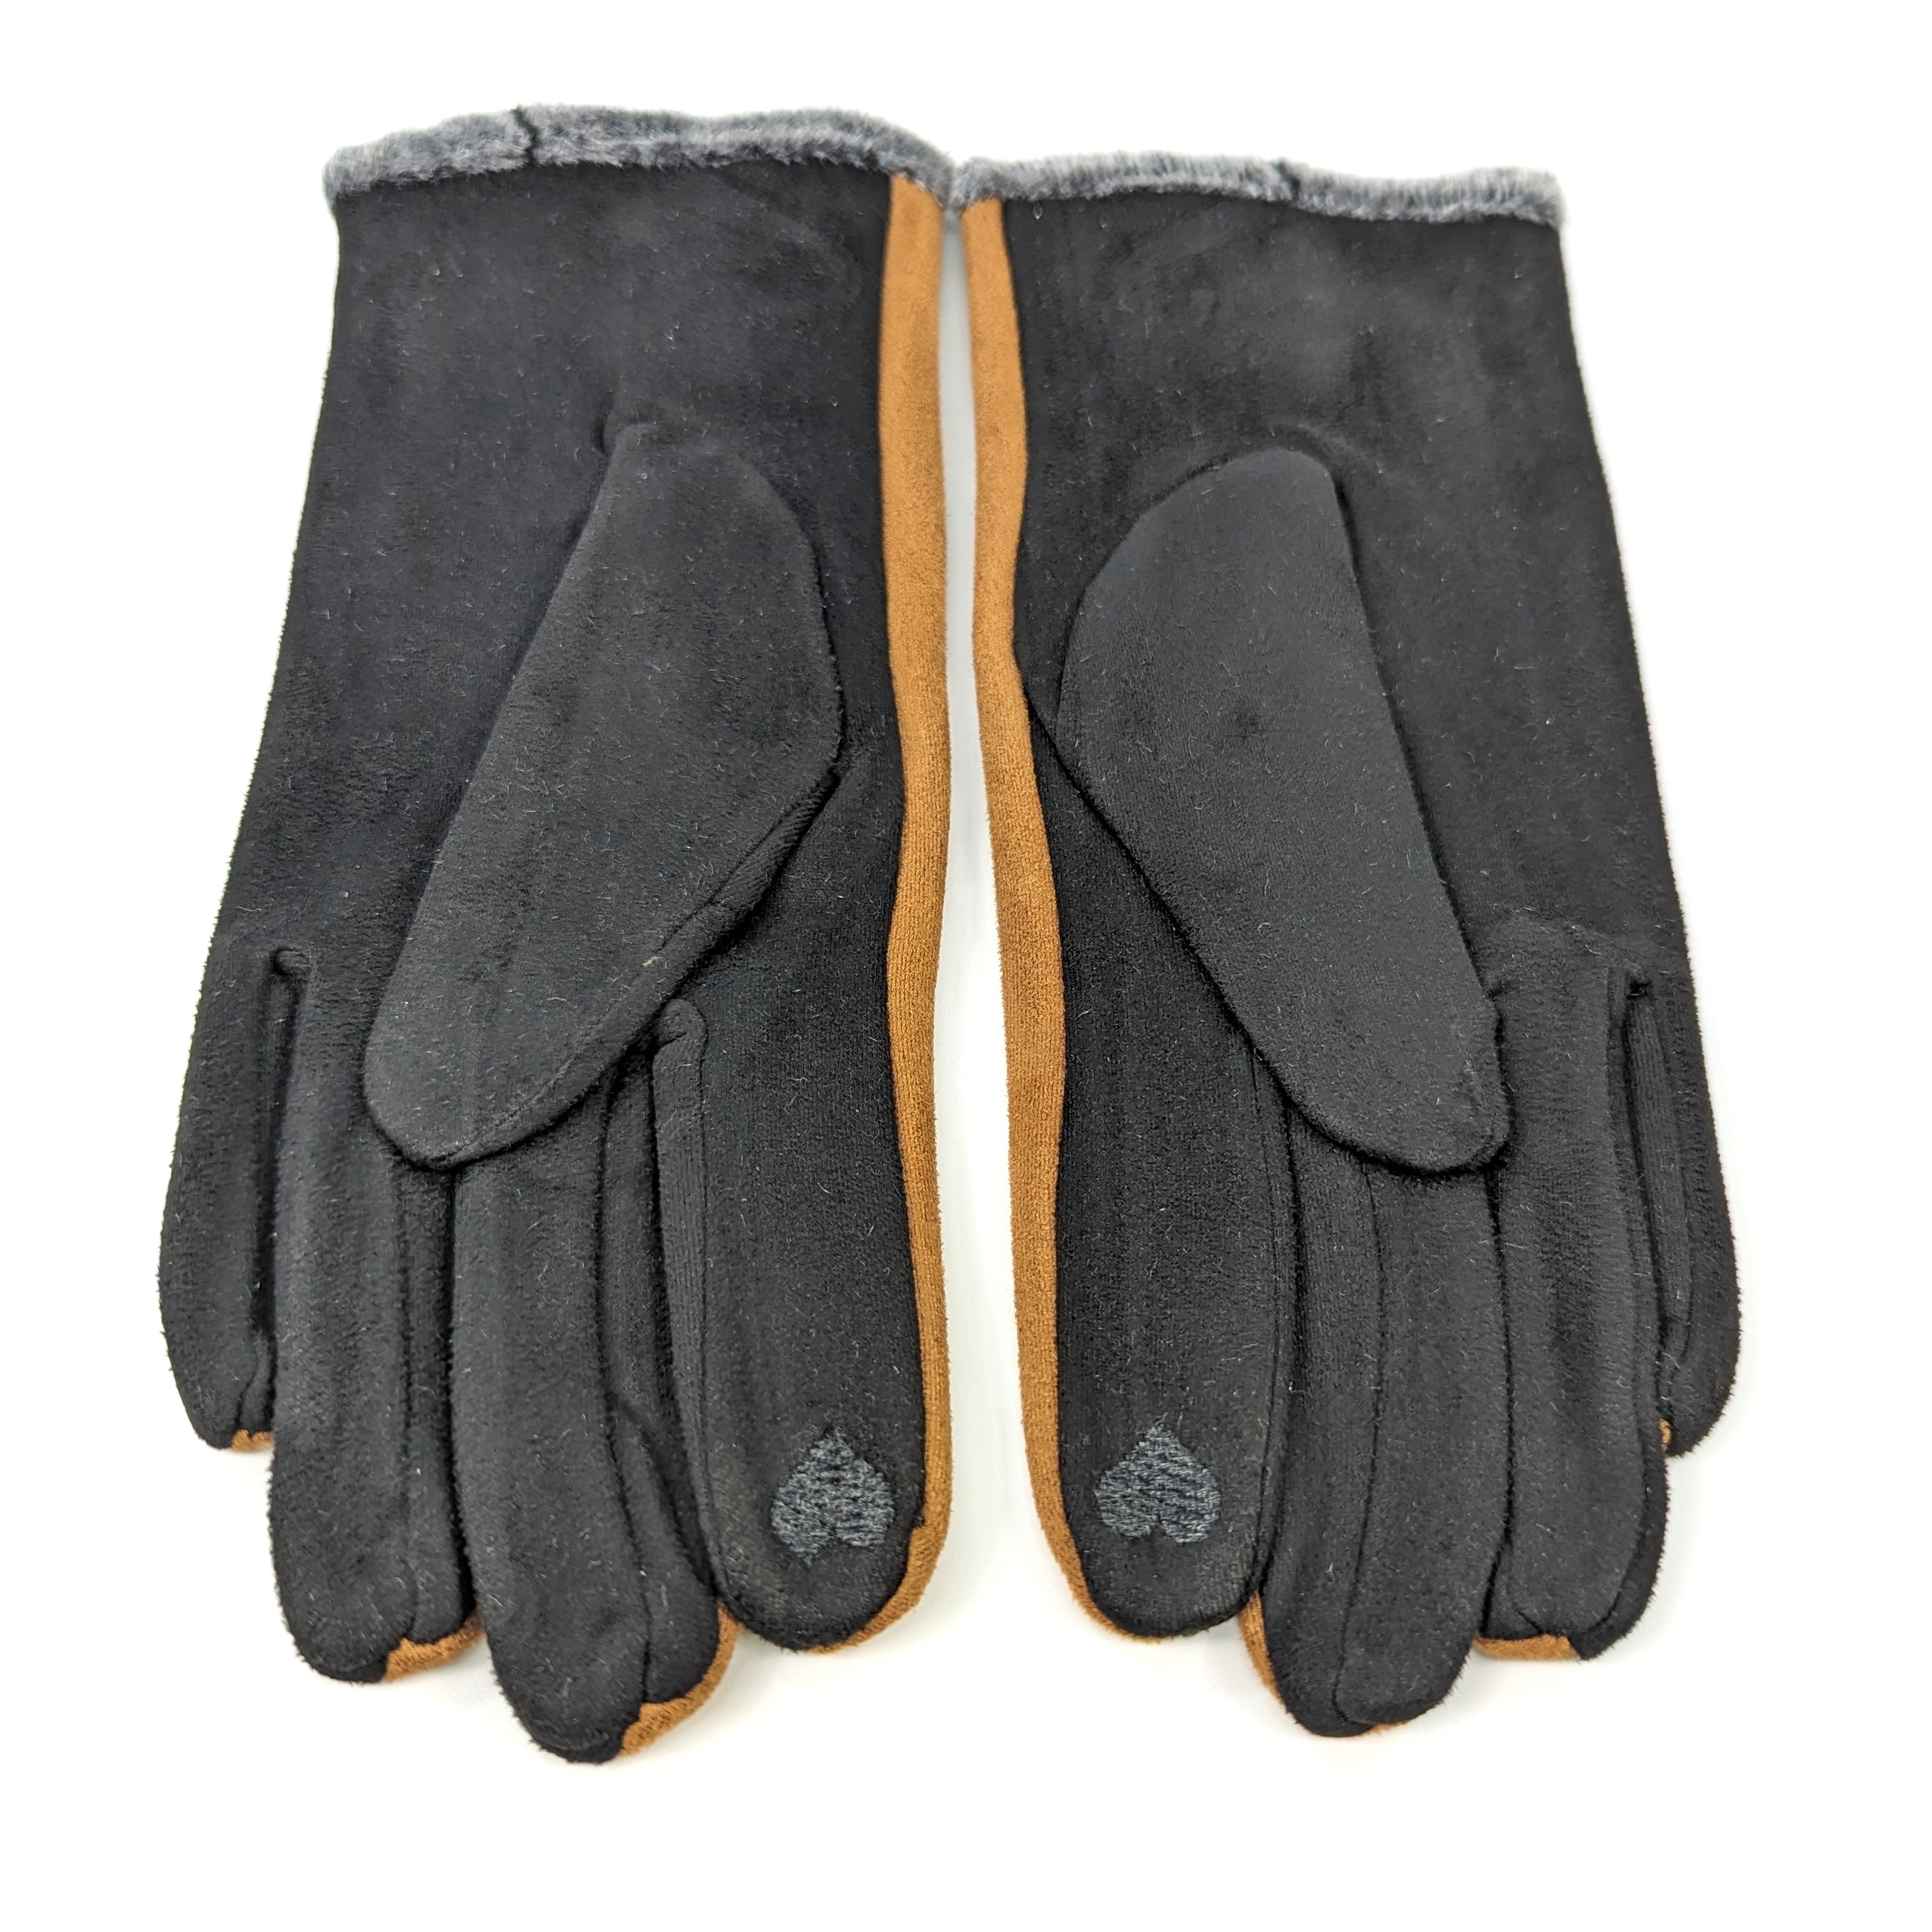 Bicolour Suede Effect Gloves with Faux Fur Trim - Camel/Black